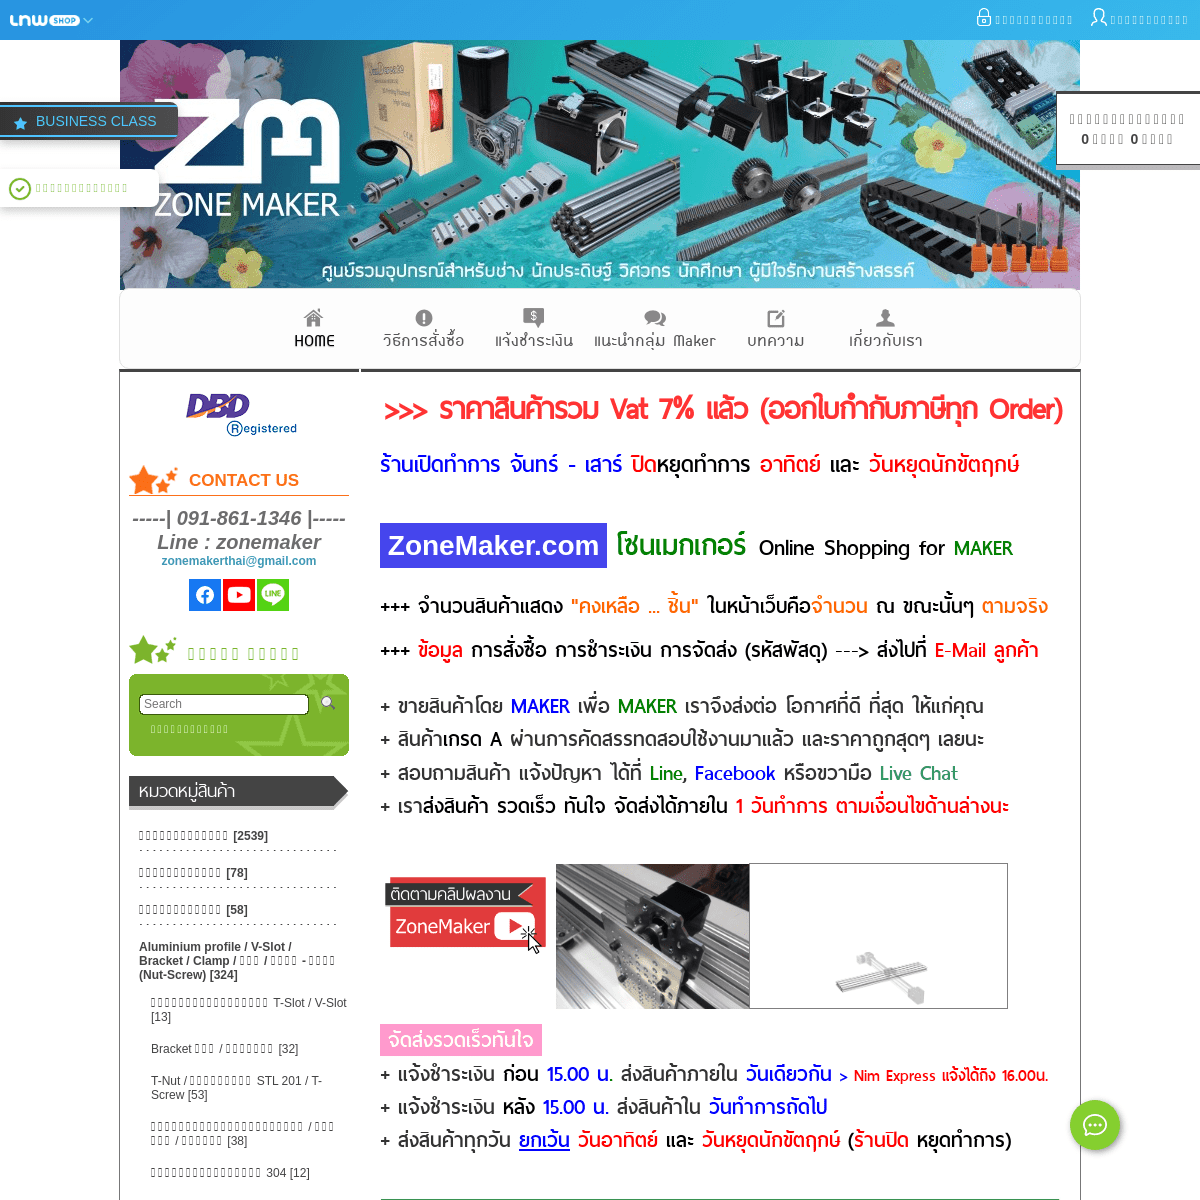 A complete backup of zonemaker.com